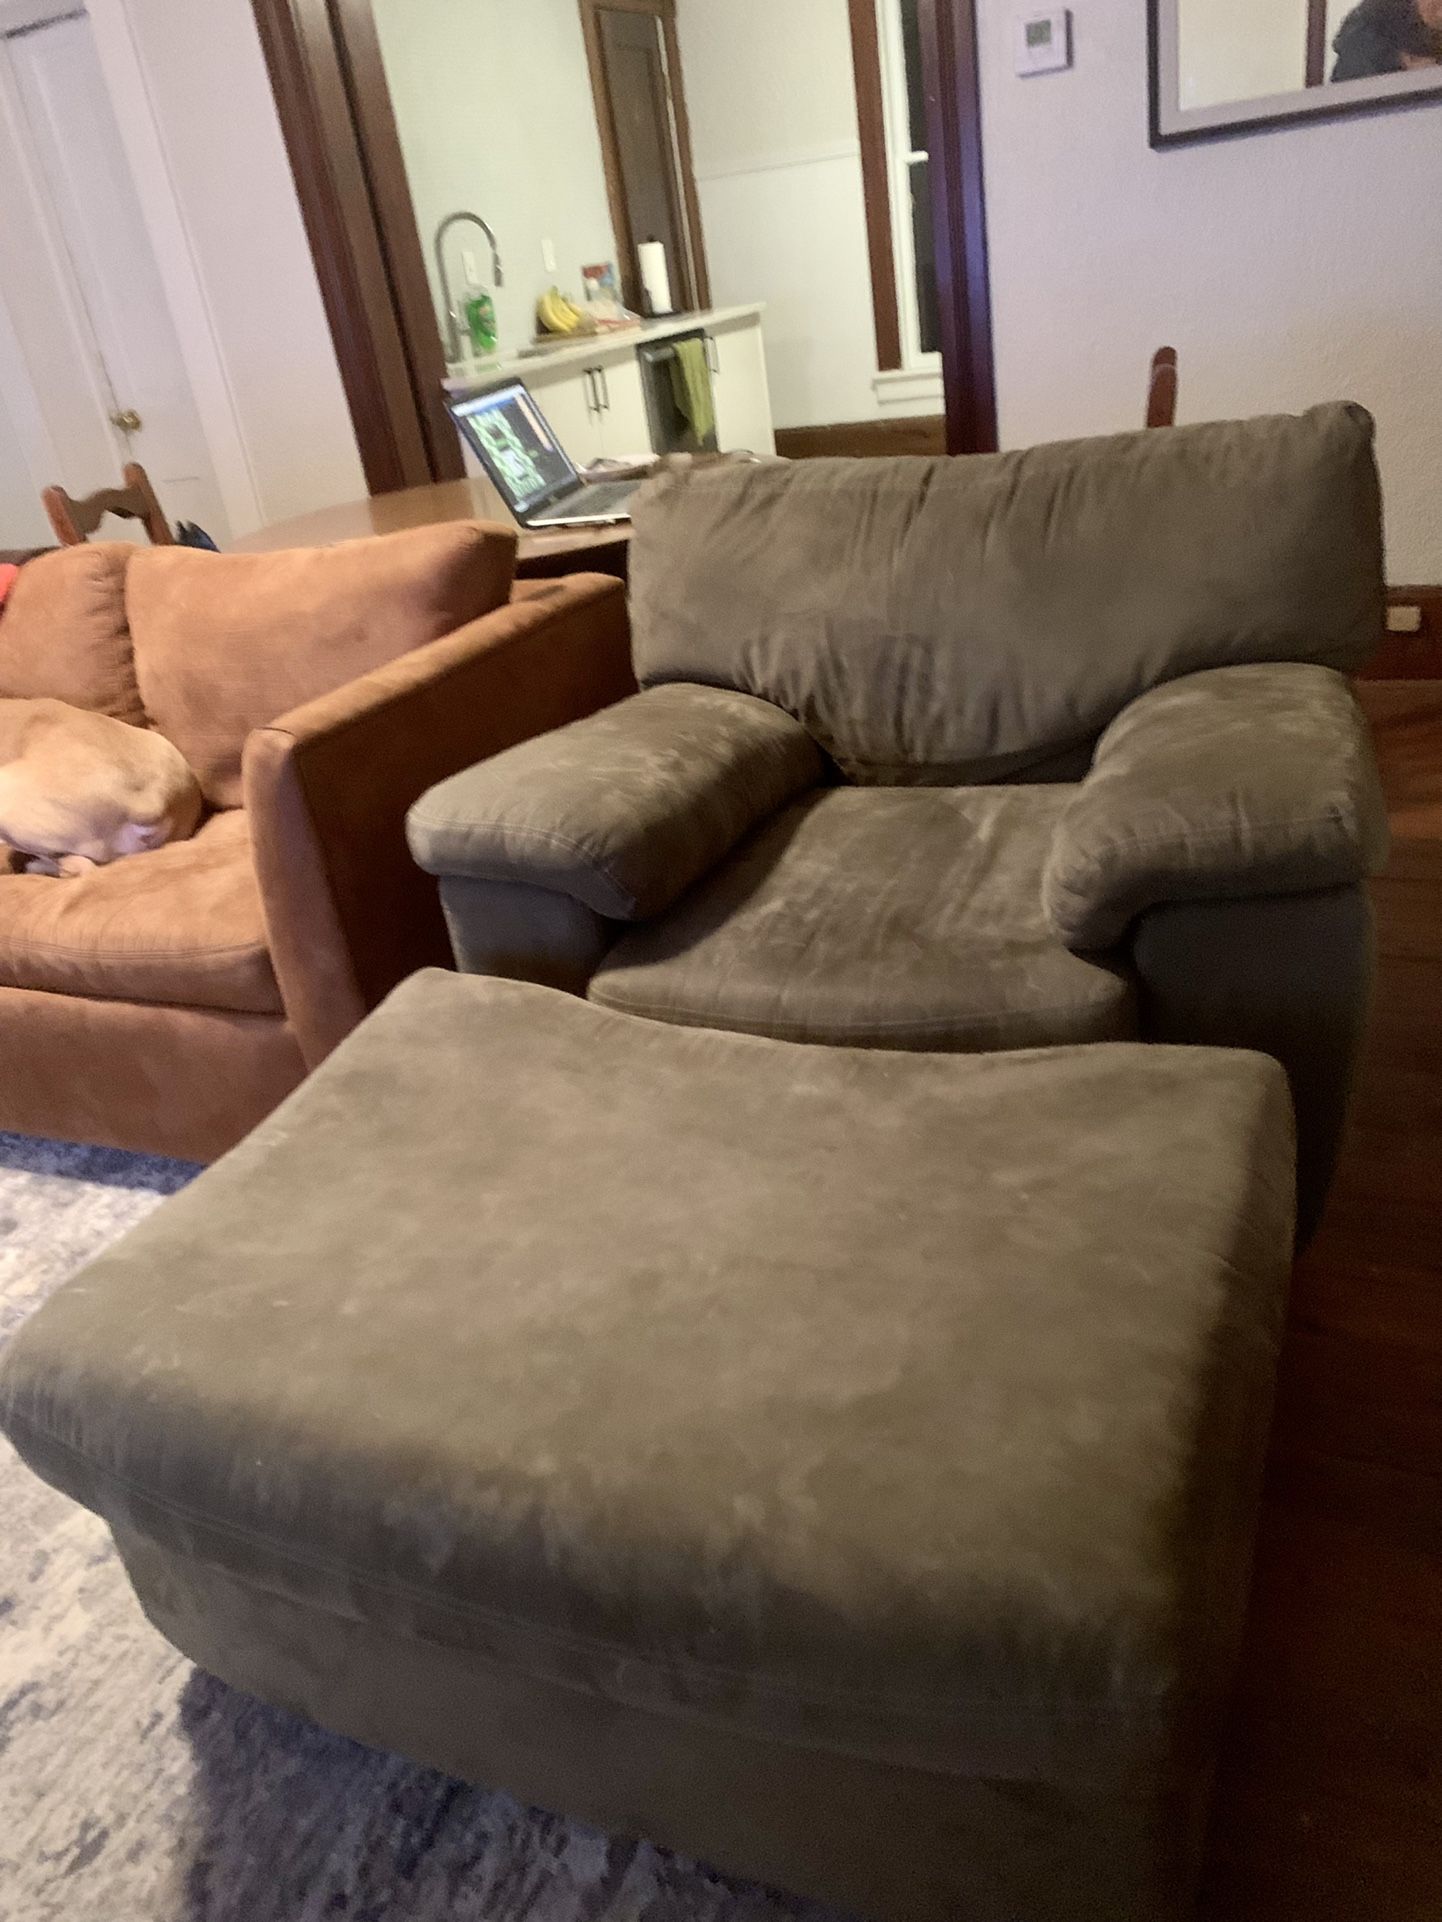 Living Room Chair And Ottoman  (Gray)